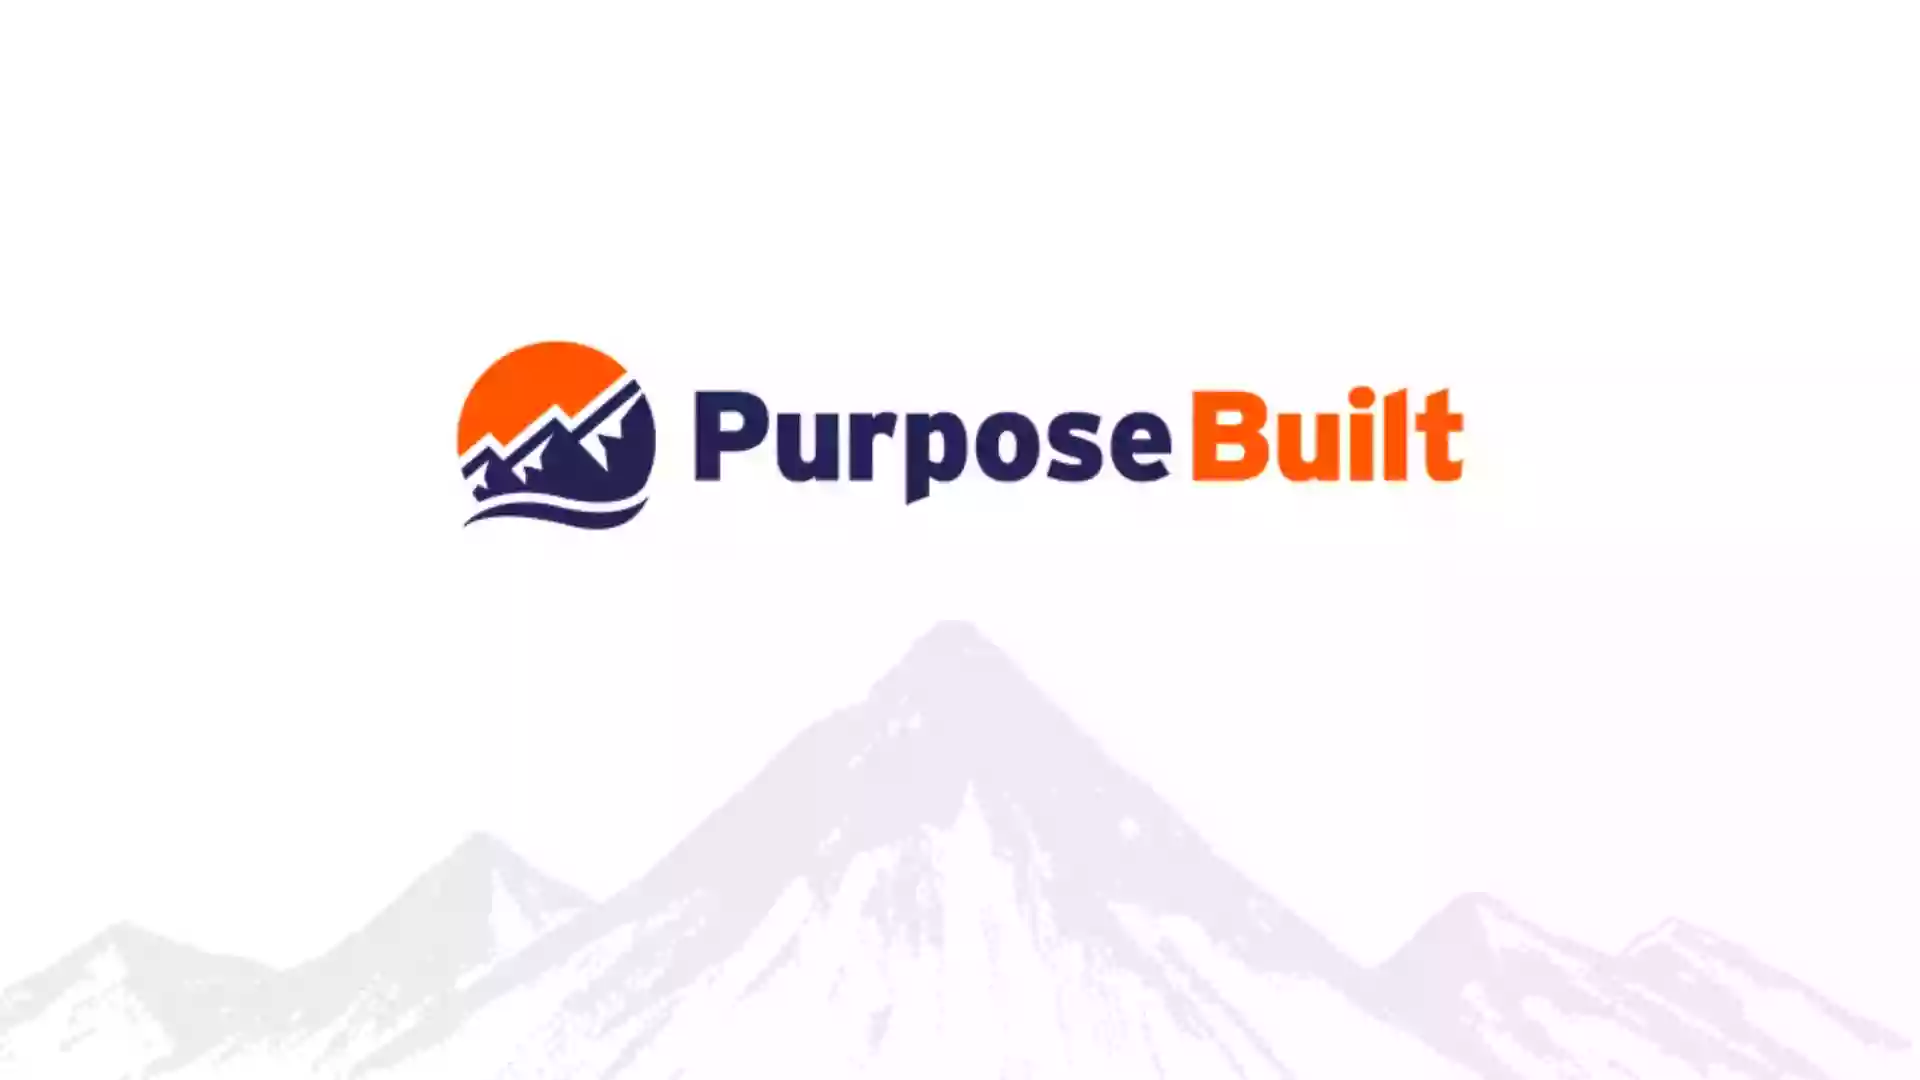 Purpose Built Financial Services